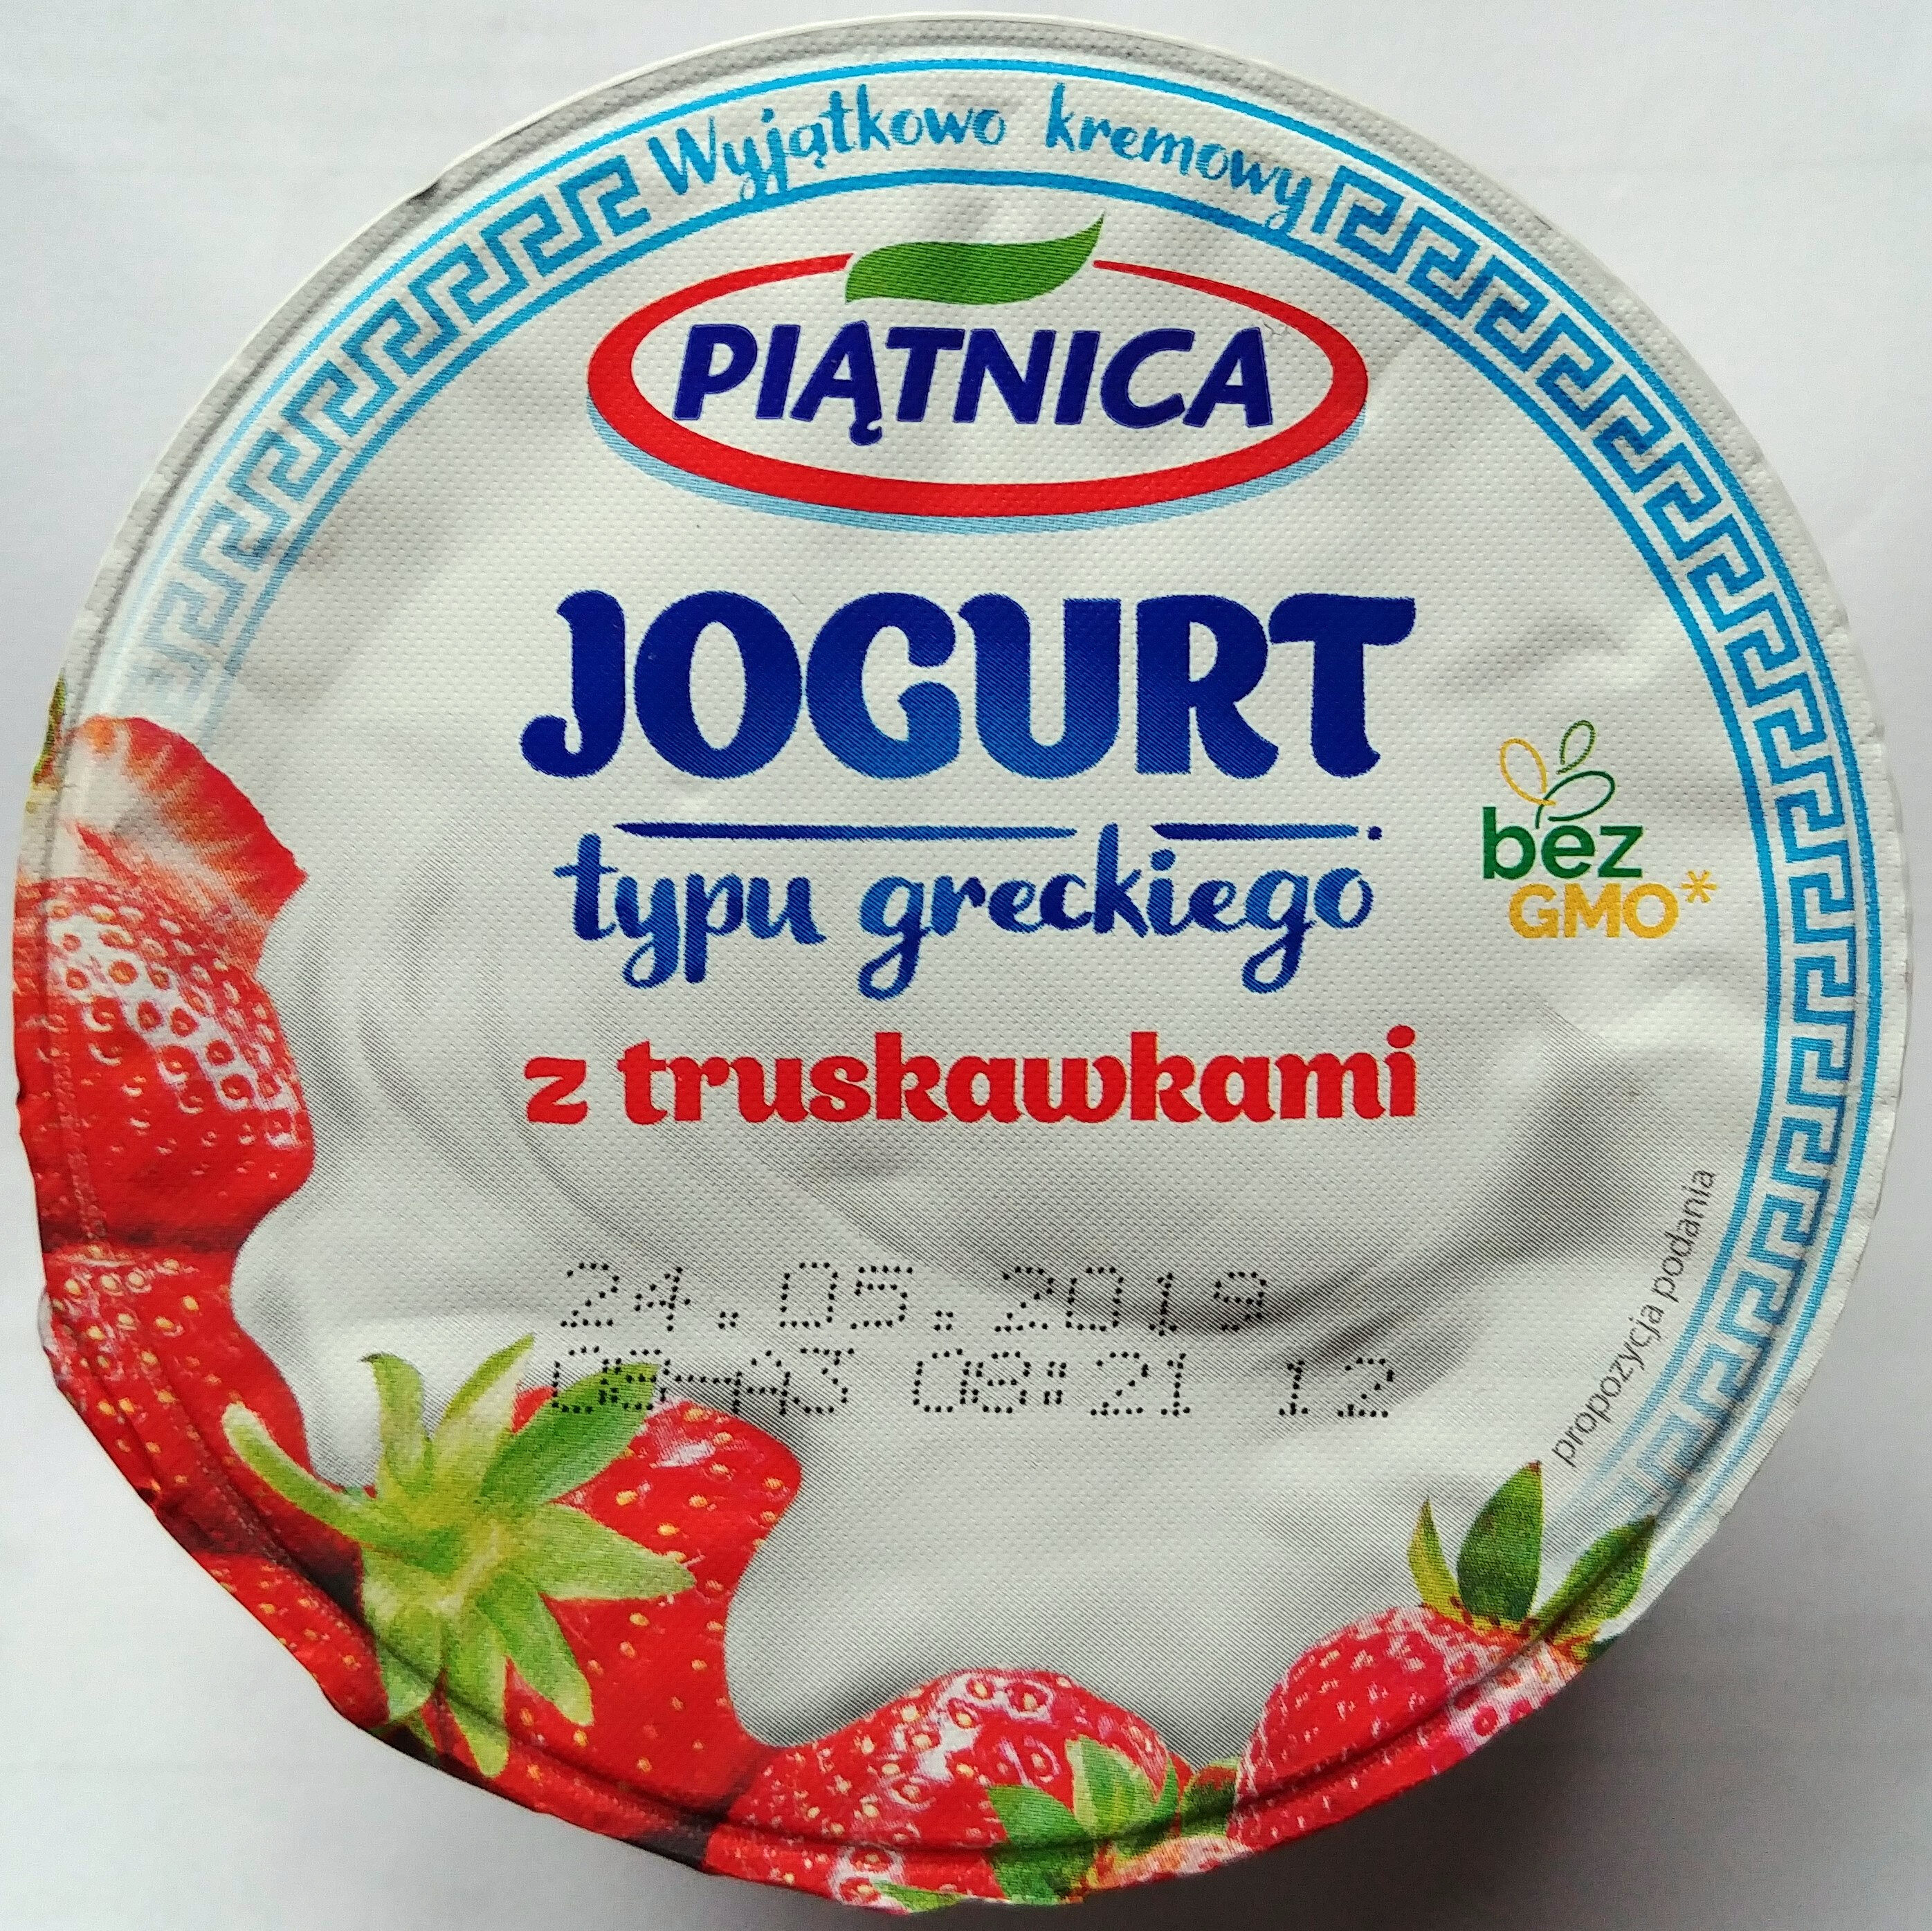 Jogurt typu greckiego z truskawkami - Product